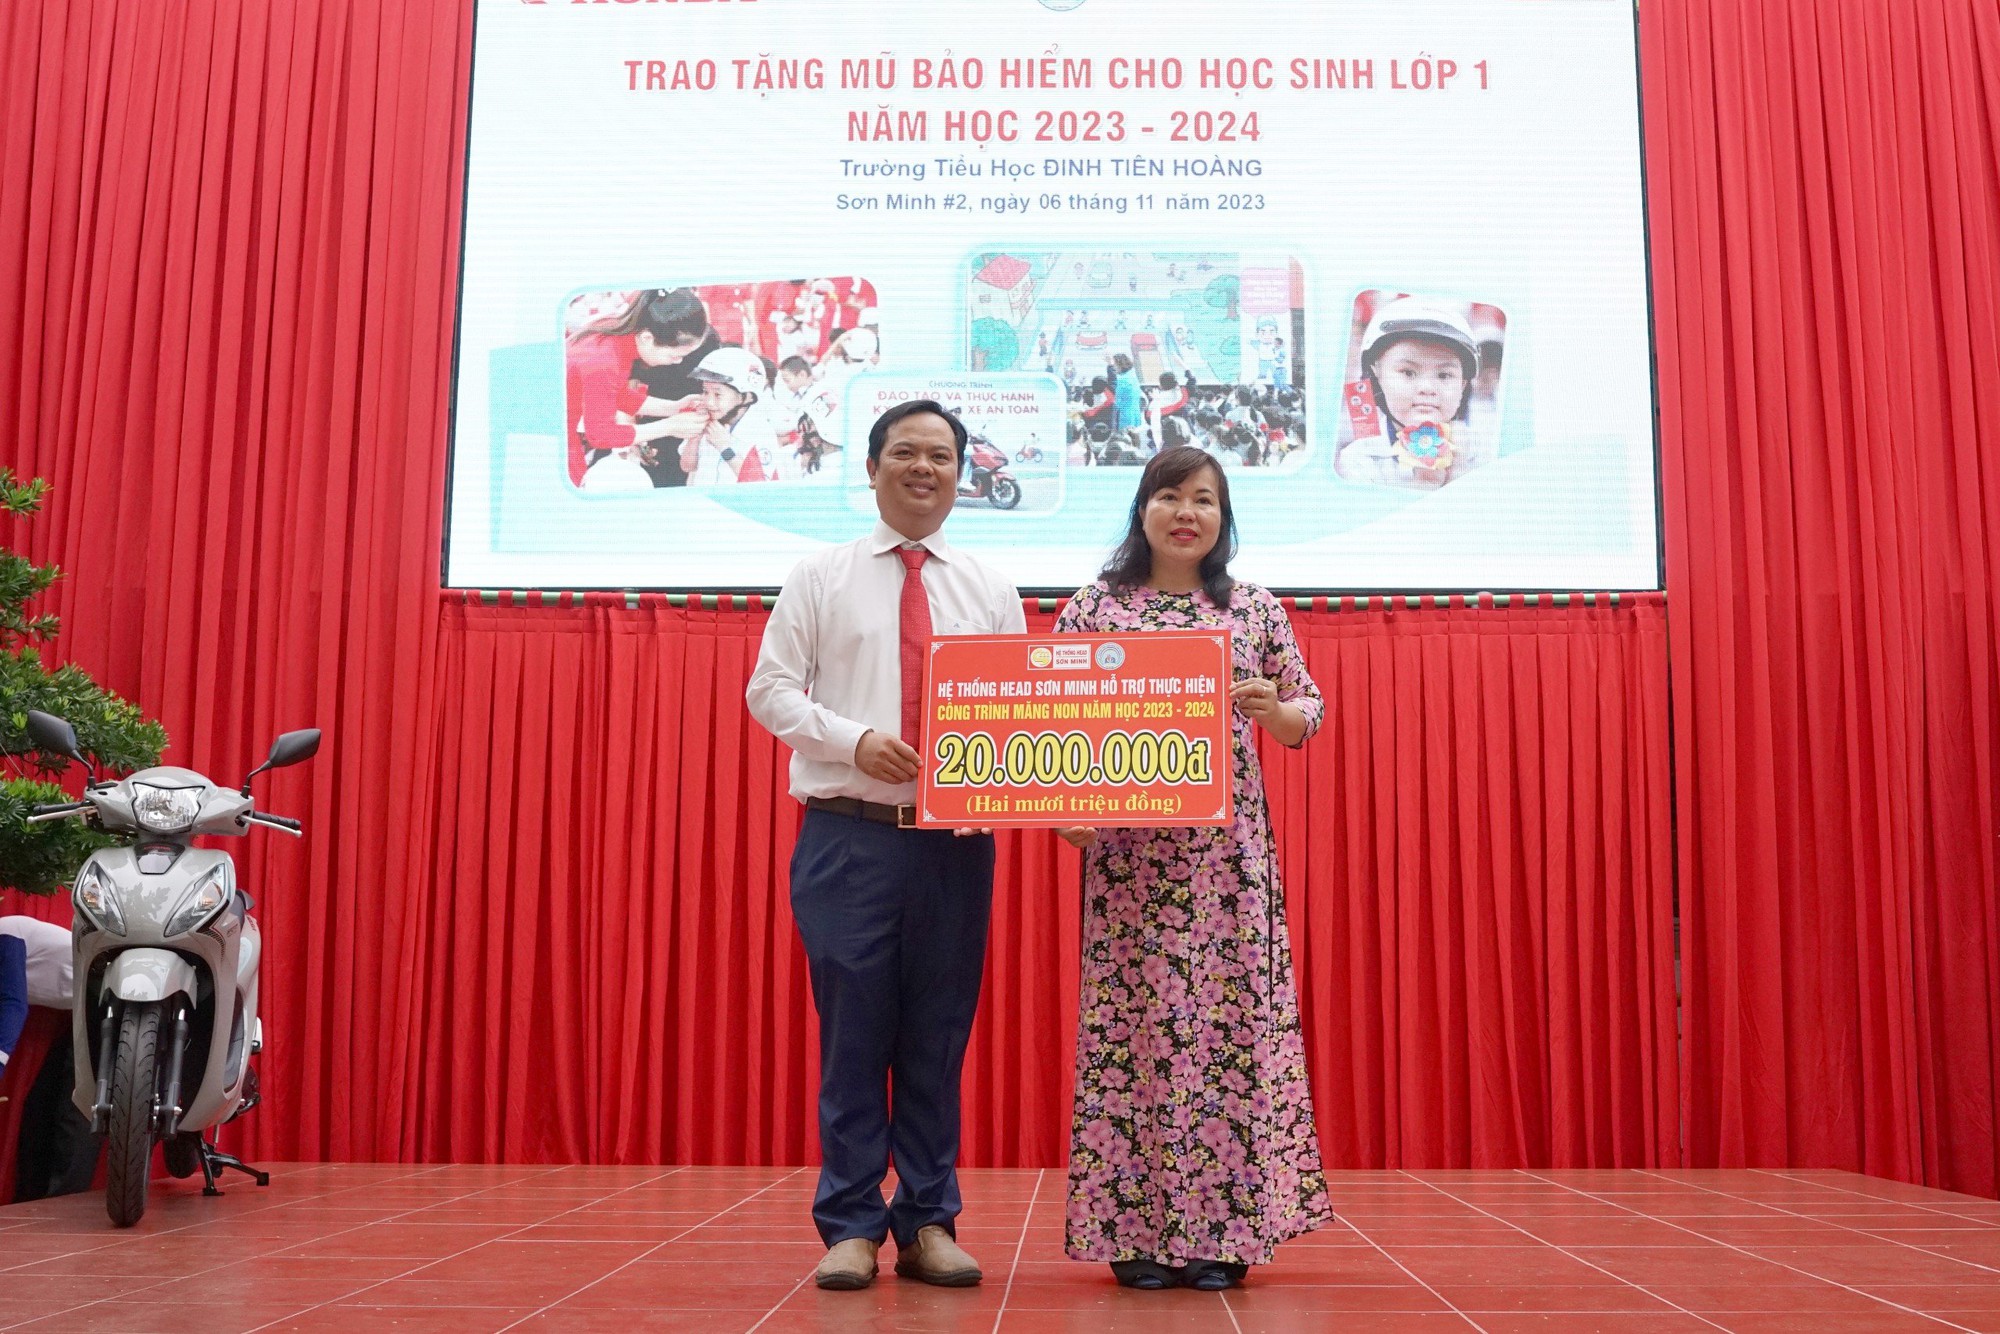 HEAD Sơn Minh trao mũ bảo hiểm cho học sinh trường tiểu học Đinh Tiên Hoàng - Ảnh 4.